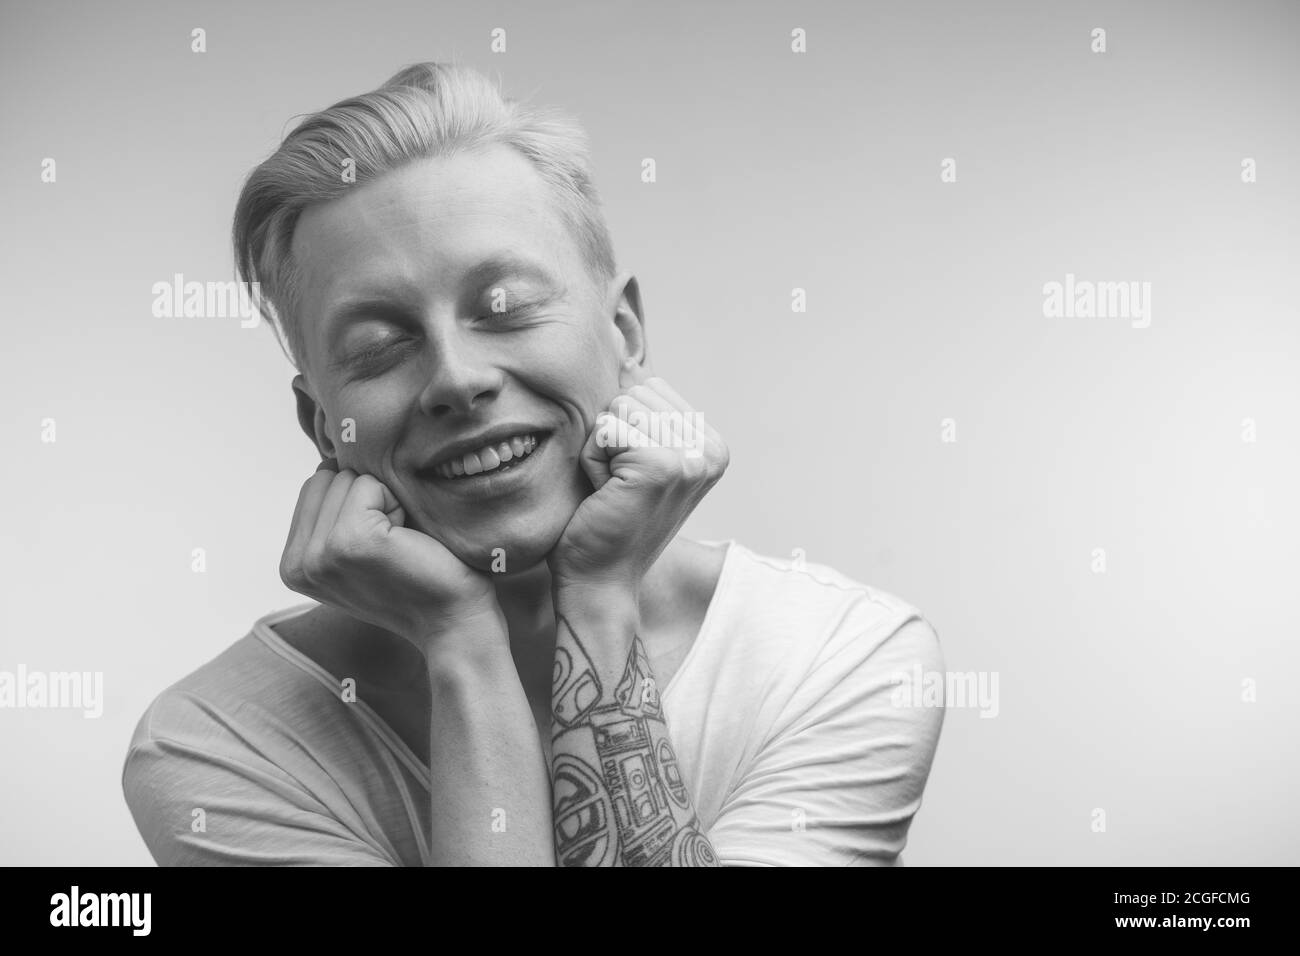 Monochrome Aufnahme von glücklichen blonden Mann mit ungewöhnlich gut aussehende Erscheinung Lächelnd in die Kamera mit zufrieden träumenden Ausdruck glücklich mit Kommt h Stockfoto